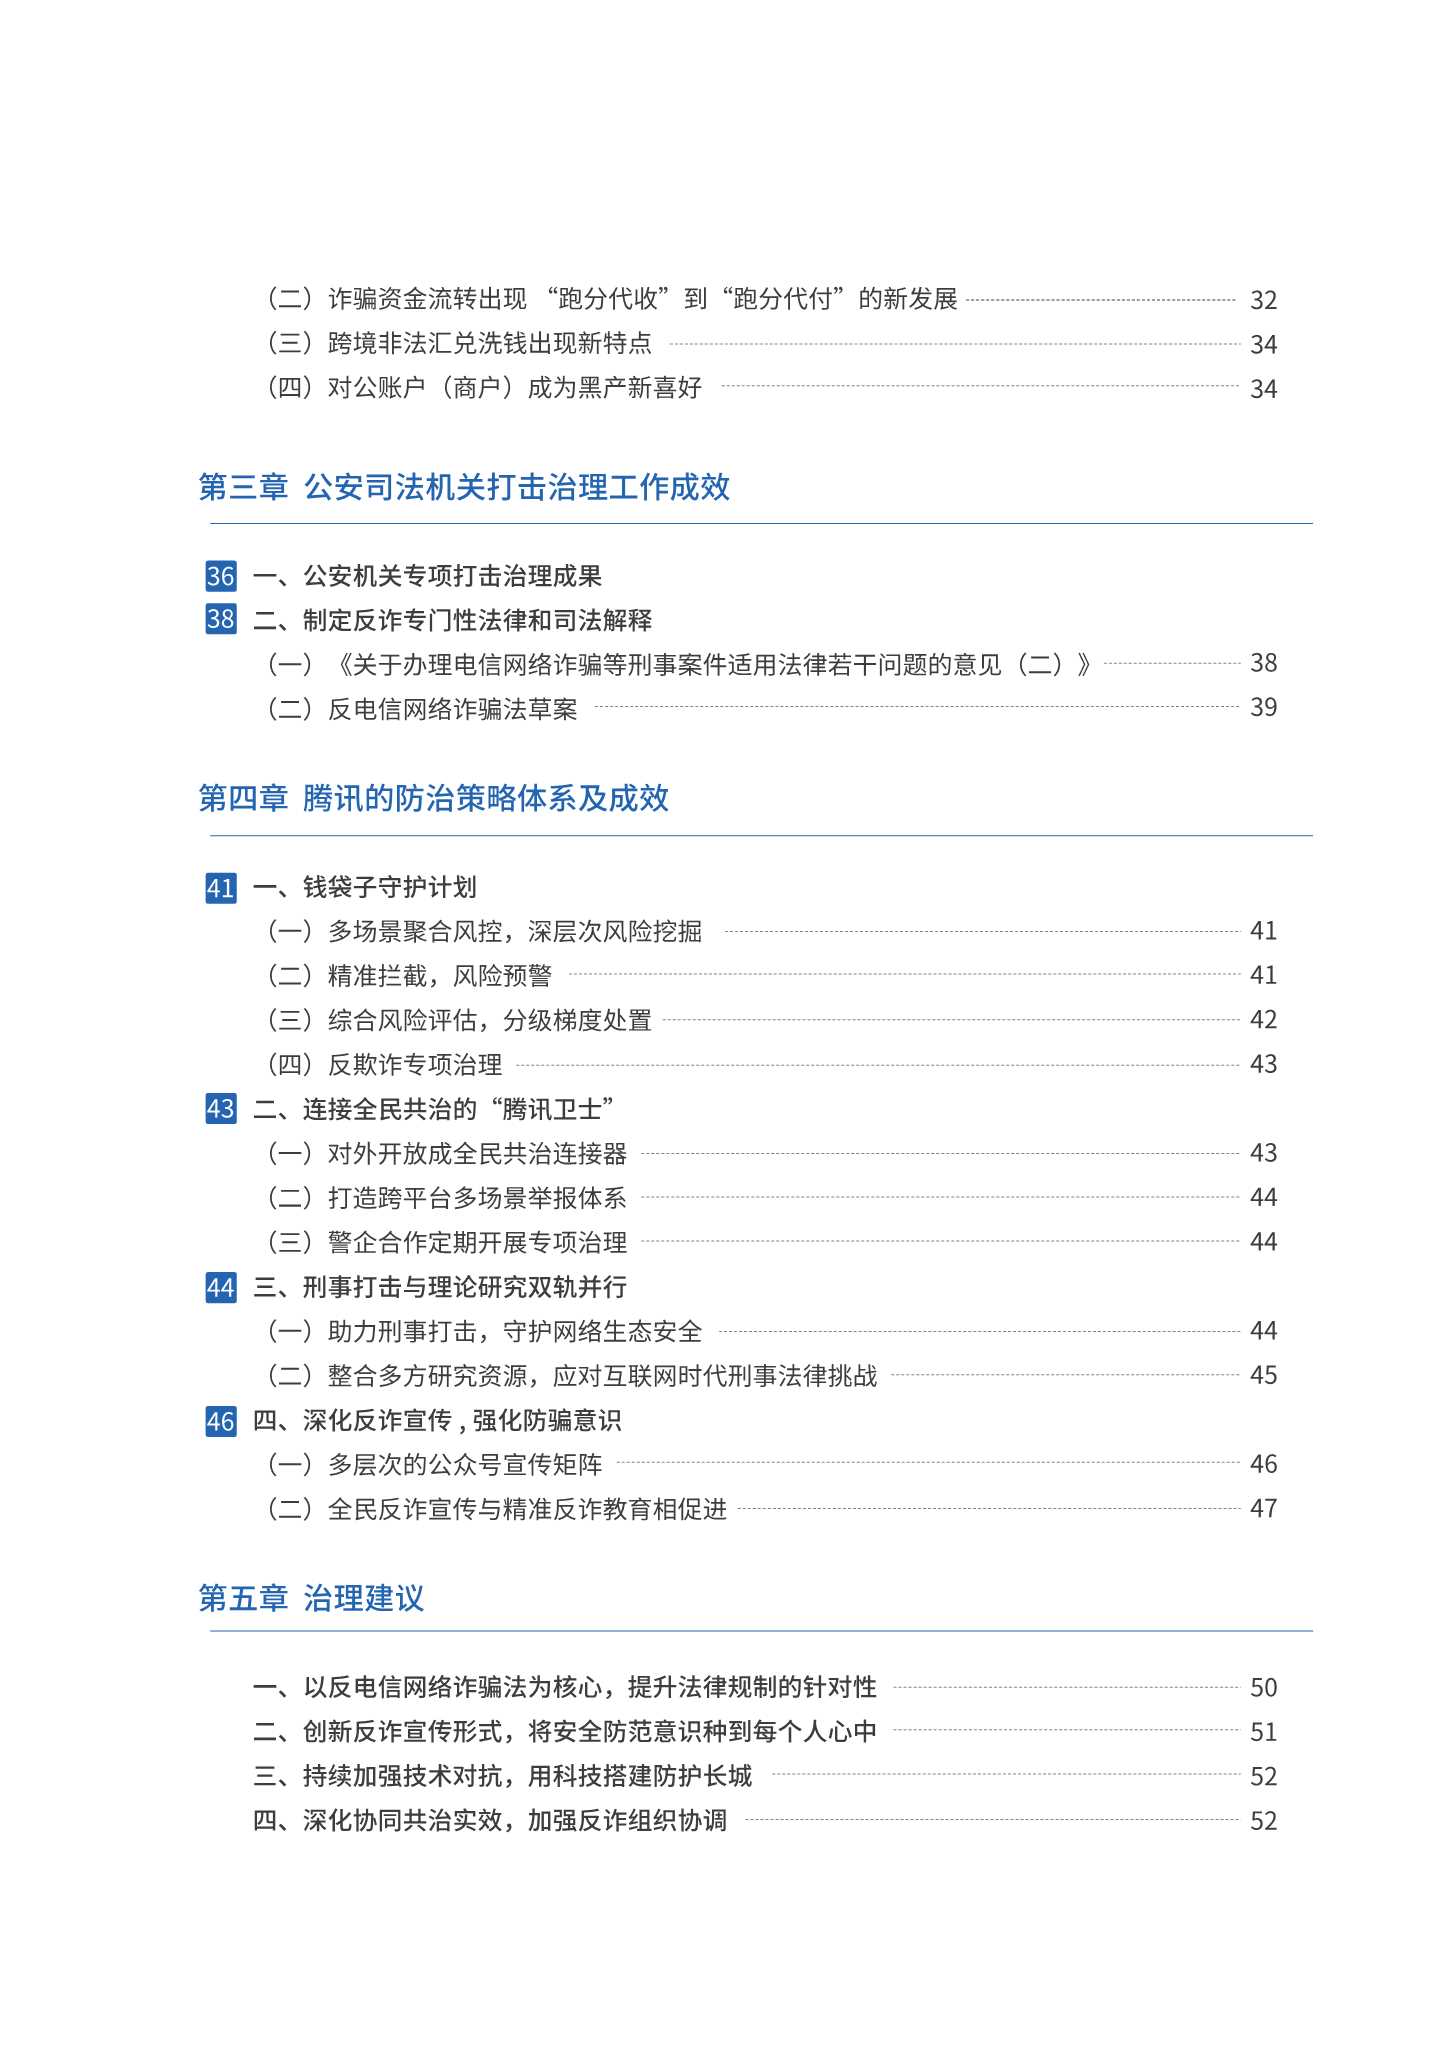 腾讯-2021年电信网络诈骗治理研究报告-2022.03-53页